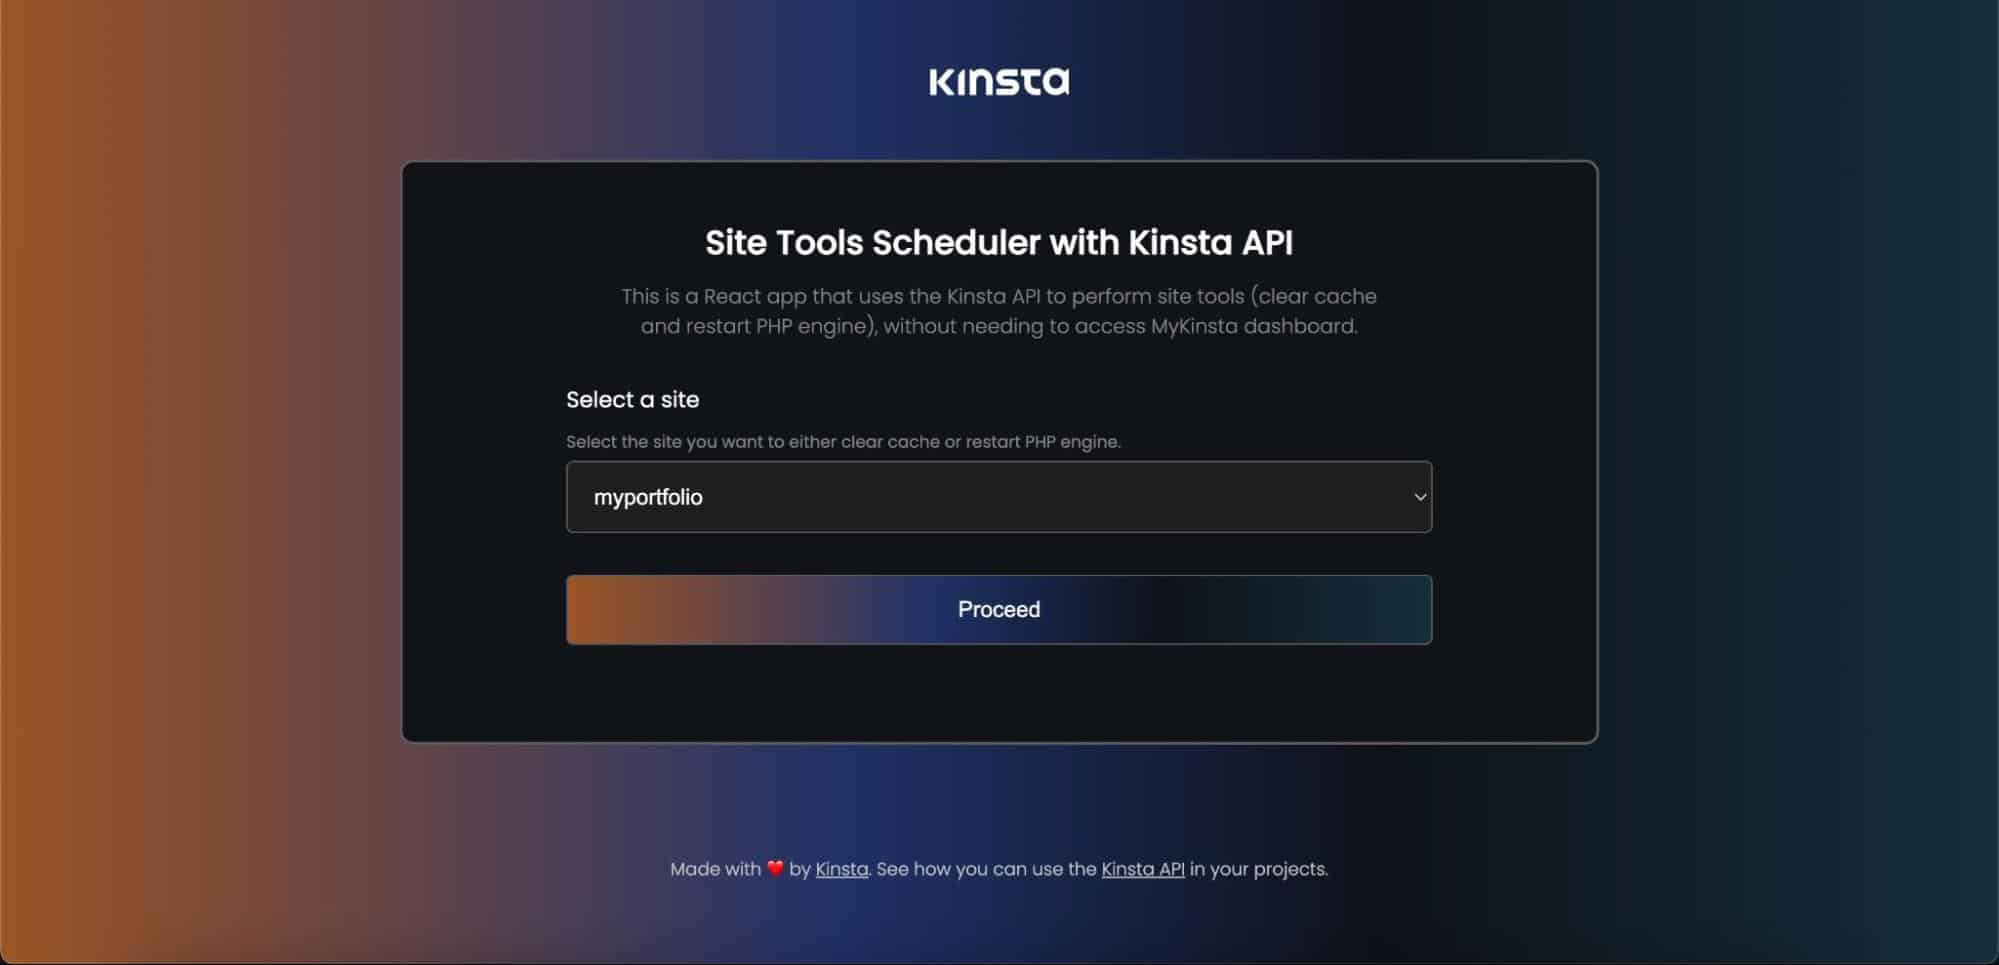 Applicazione React per la gestione degli strumenti per siti Kinsta